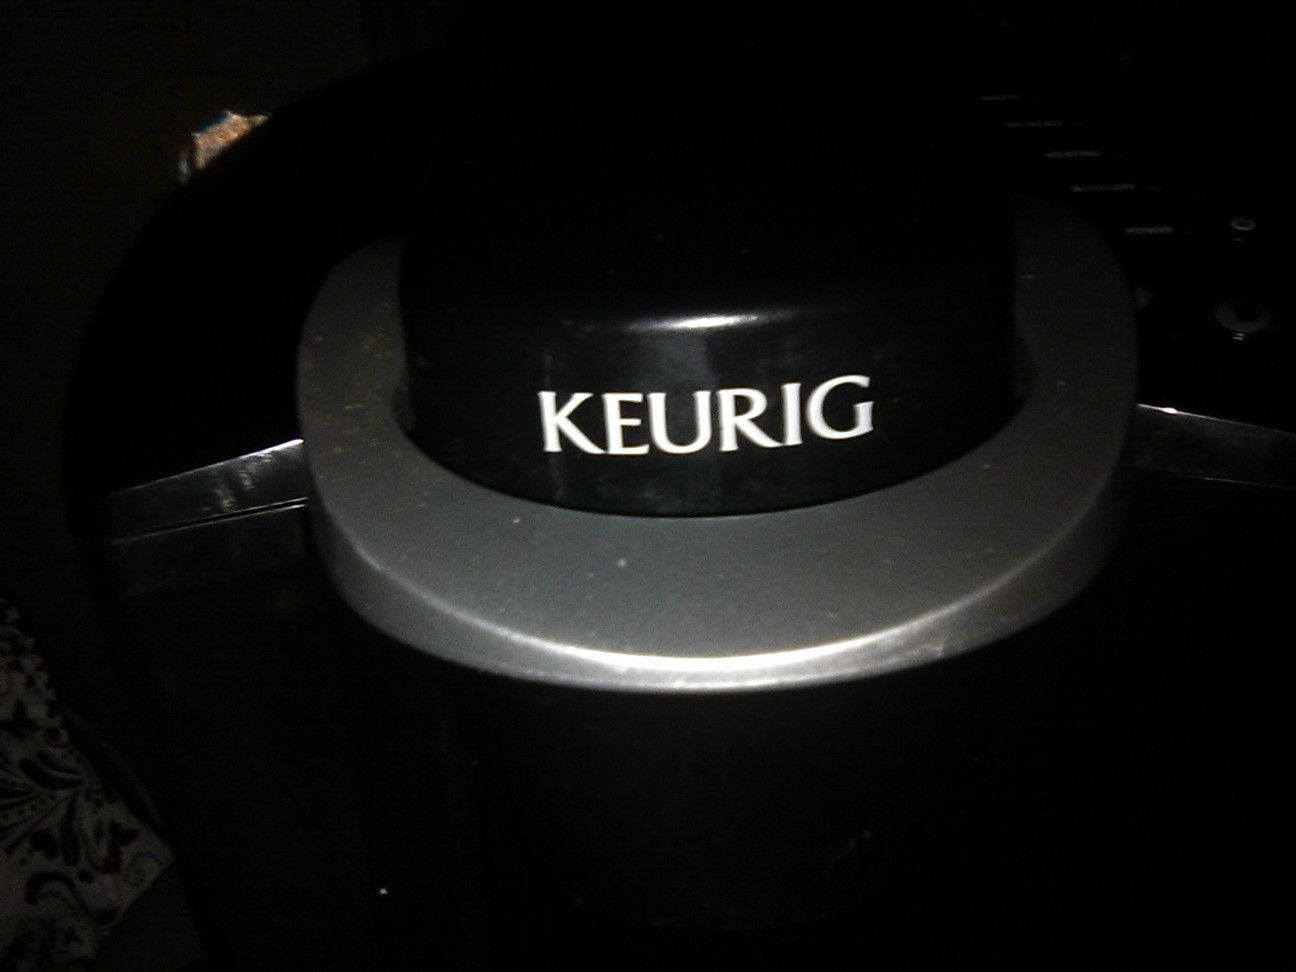 Keurig coffee maker single cup